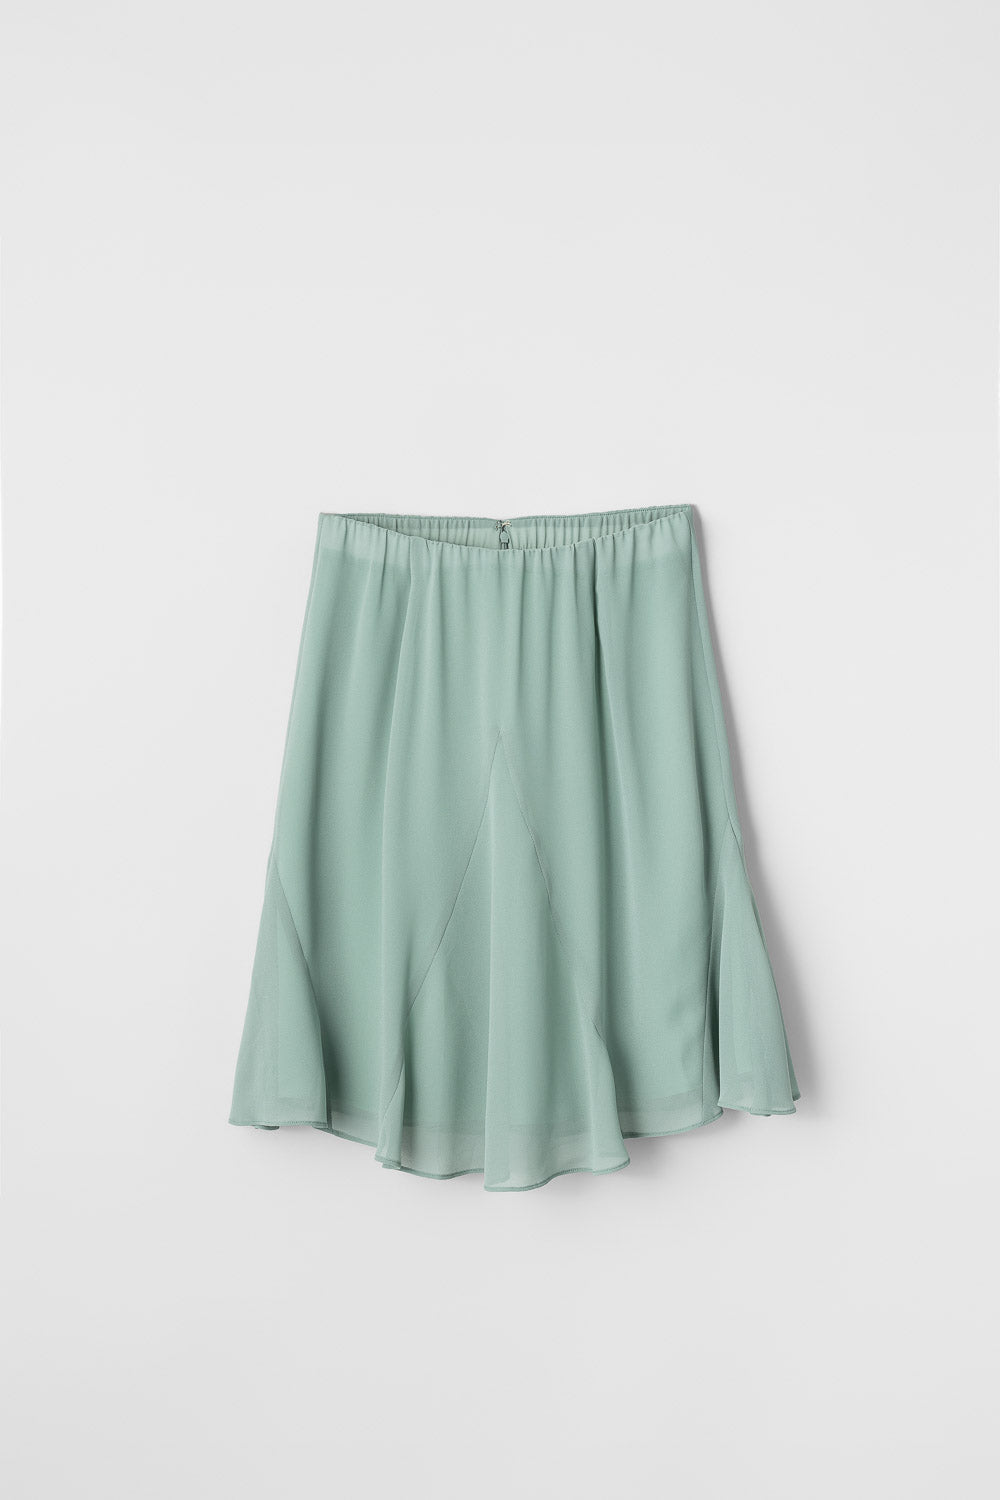 Luna Skirt Green Milieu